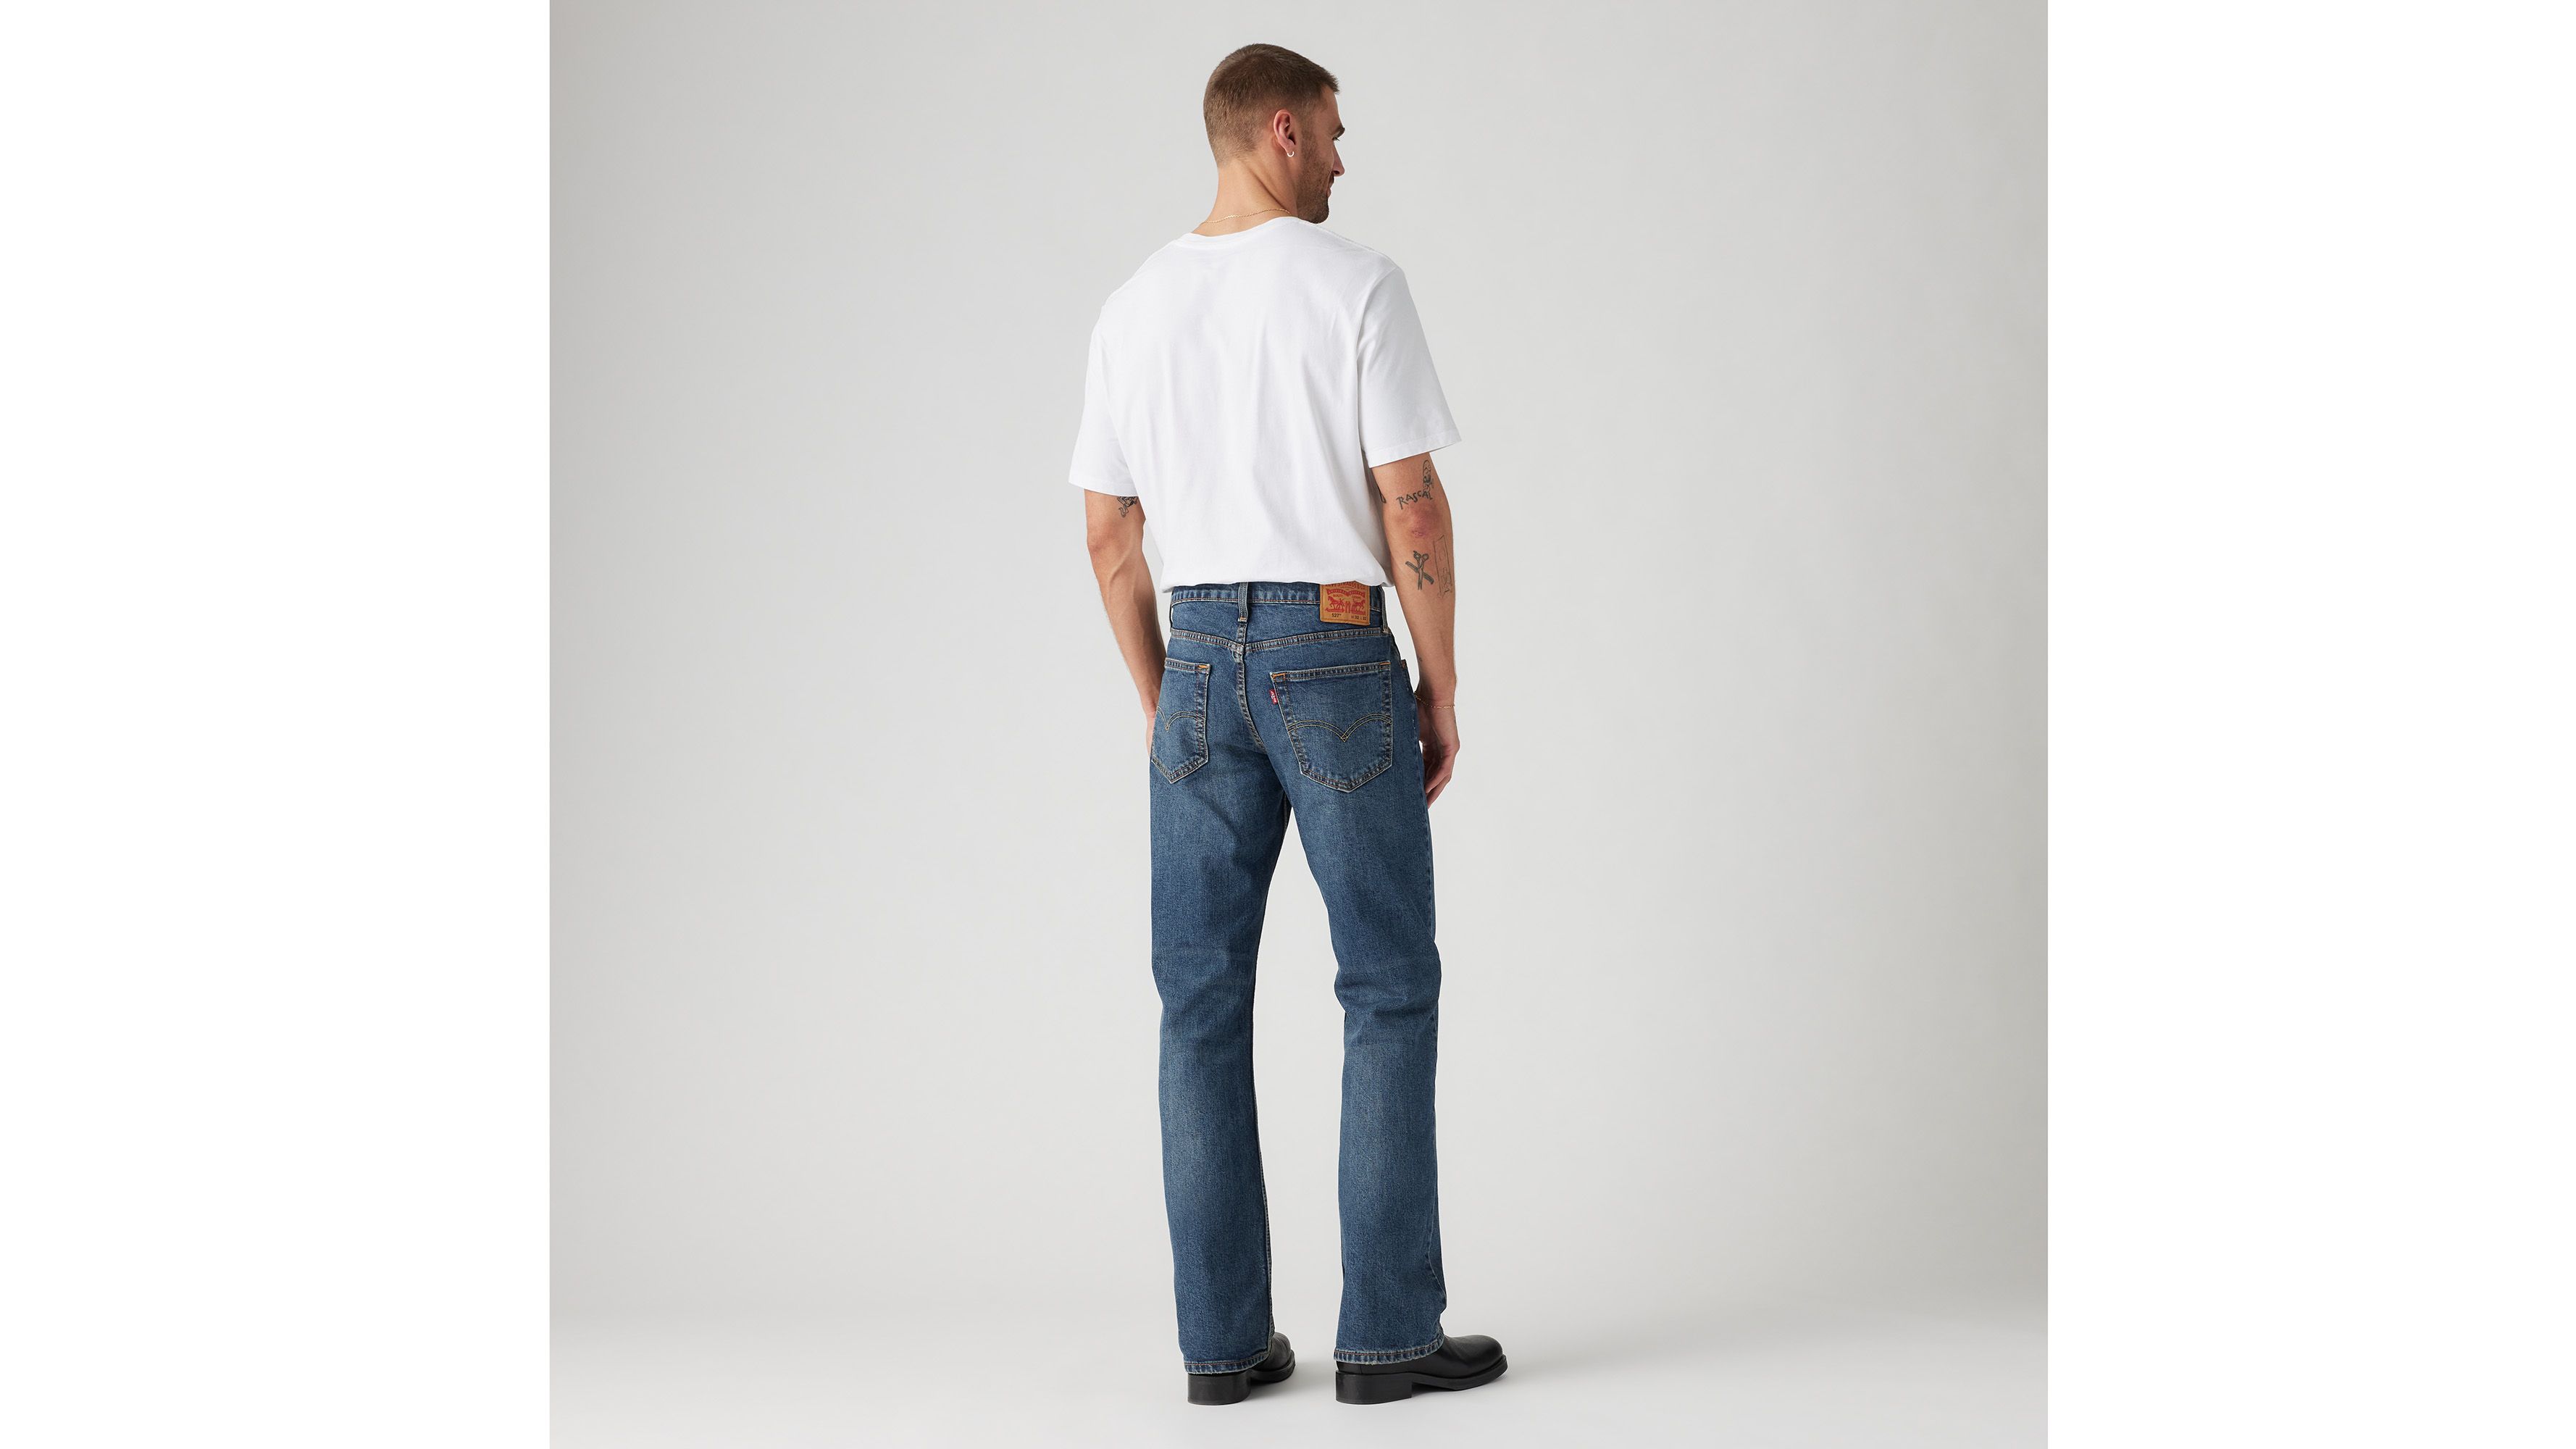 accelerator Enumerate svær at tilfredsstille 527™ Slim Bootcut Men's Jeans - Dark Wash | Levi's® US